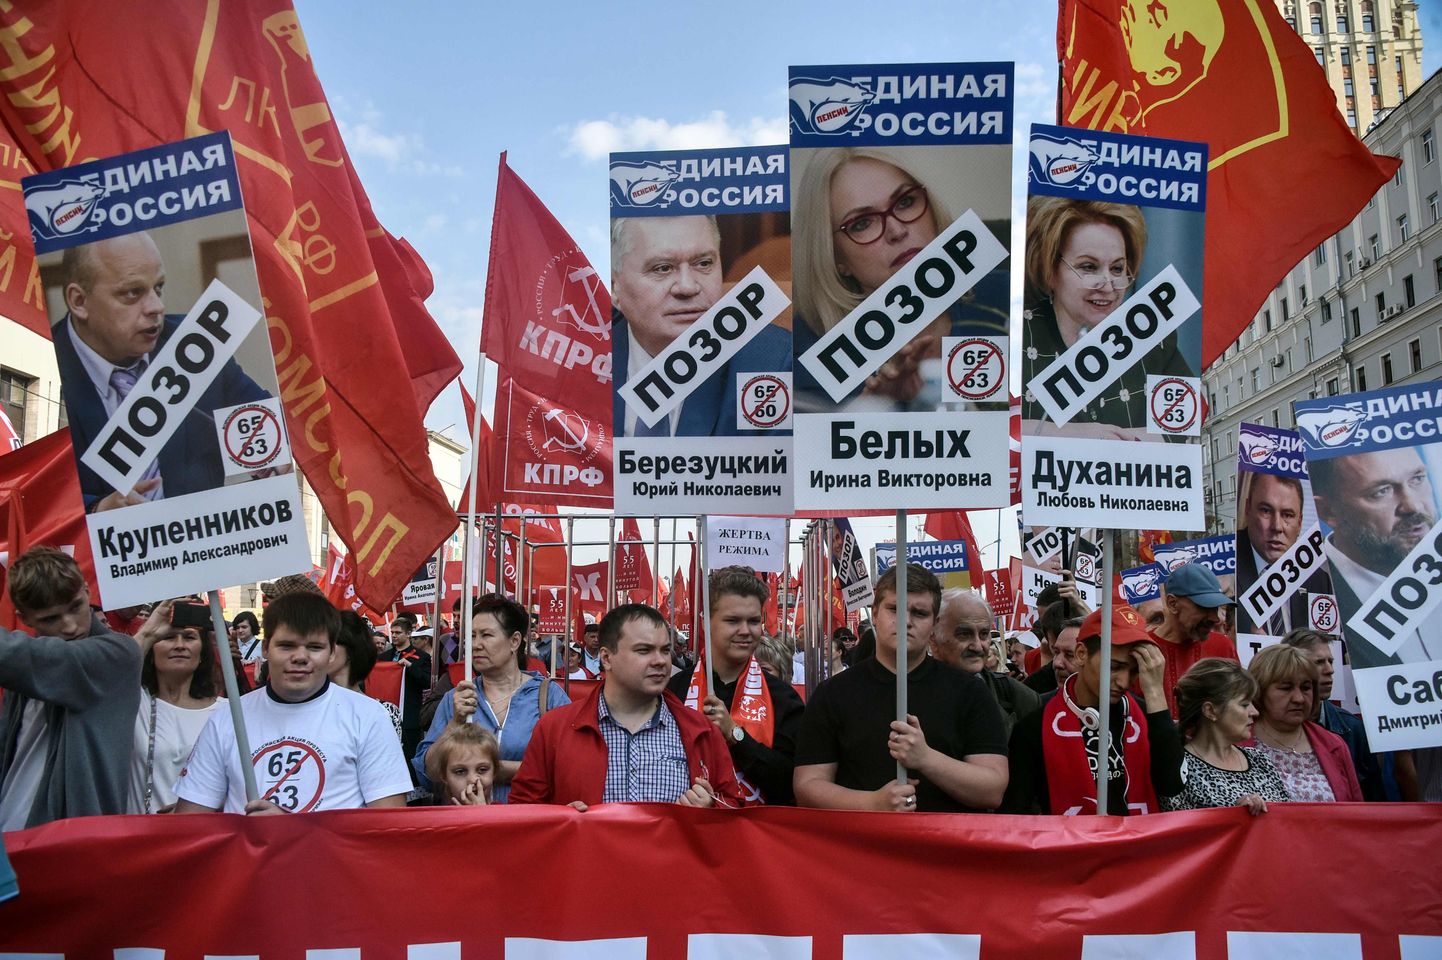 Pensioniea tõstmise vastane meeleavaldus täna Moskvas. Protesti korraldasid kommunistid.